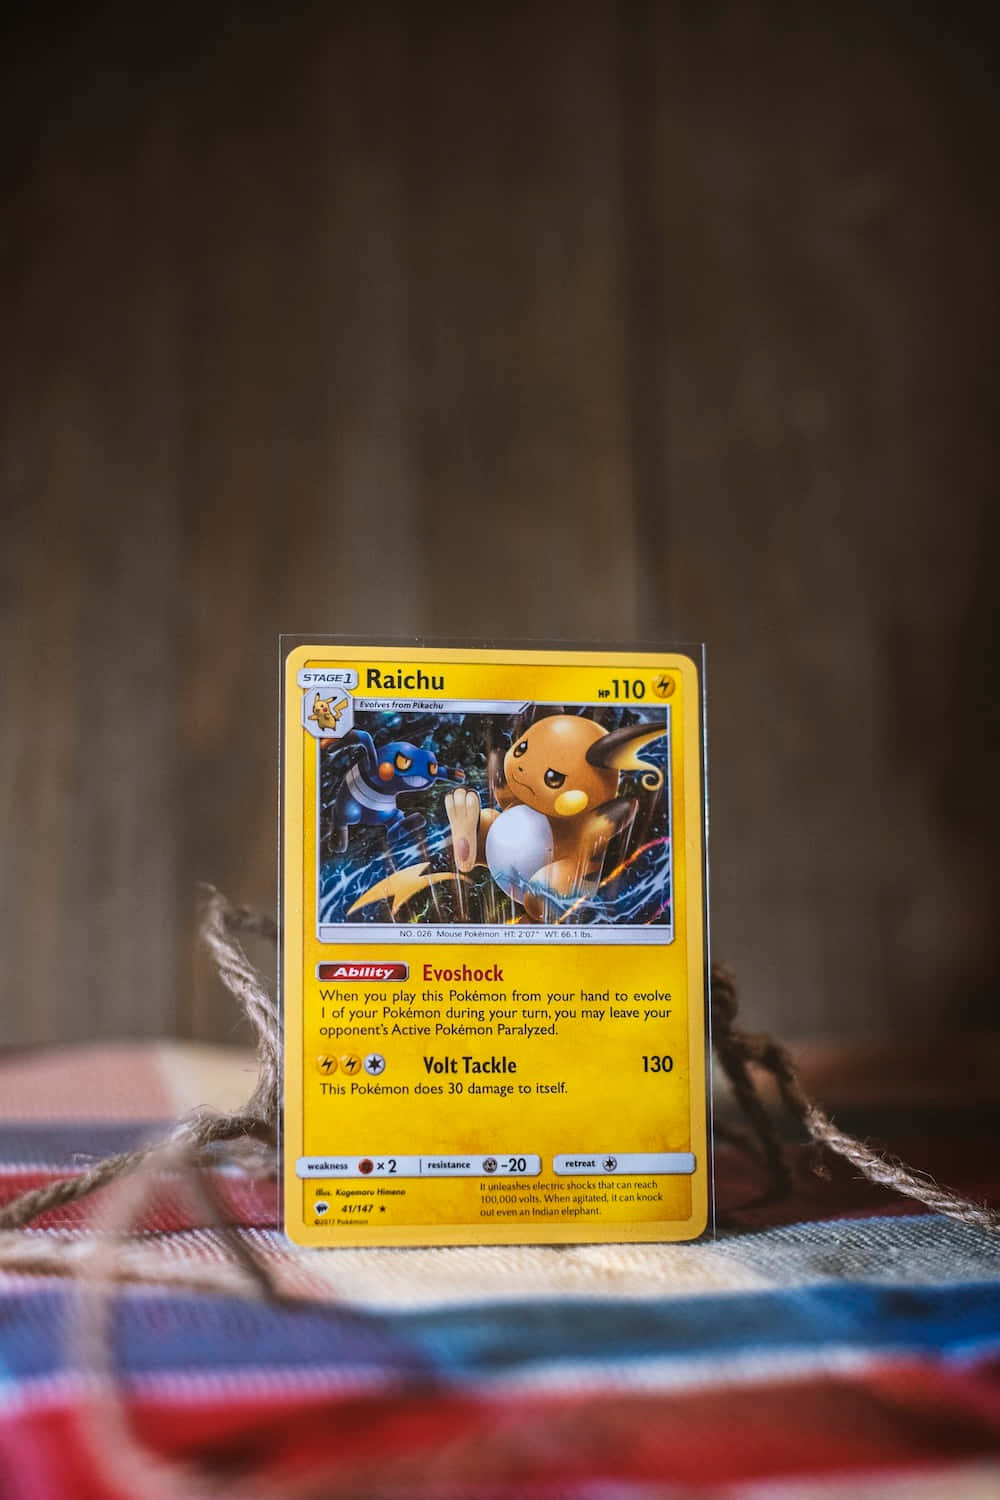 Fondode Pantalla Amarillo De La Carta De Raichu Pokémon.